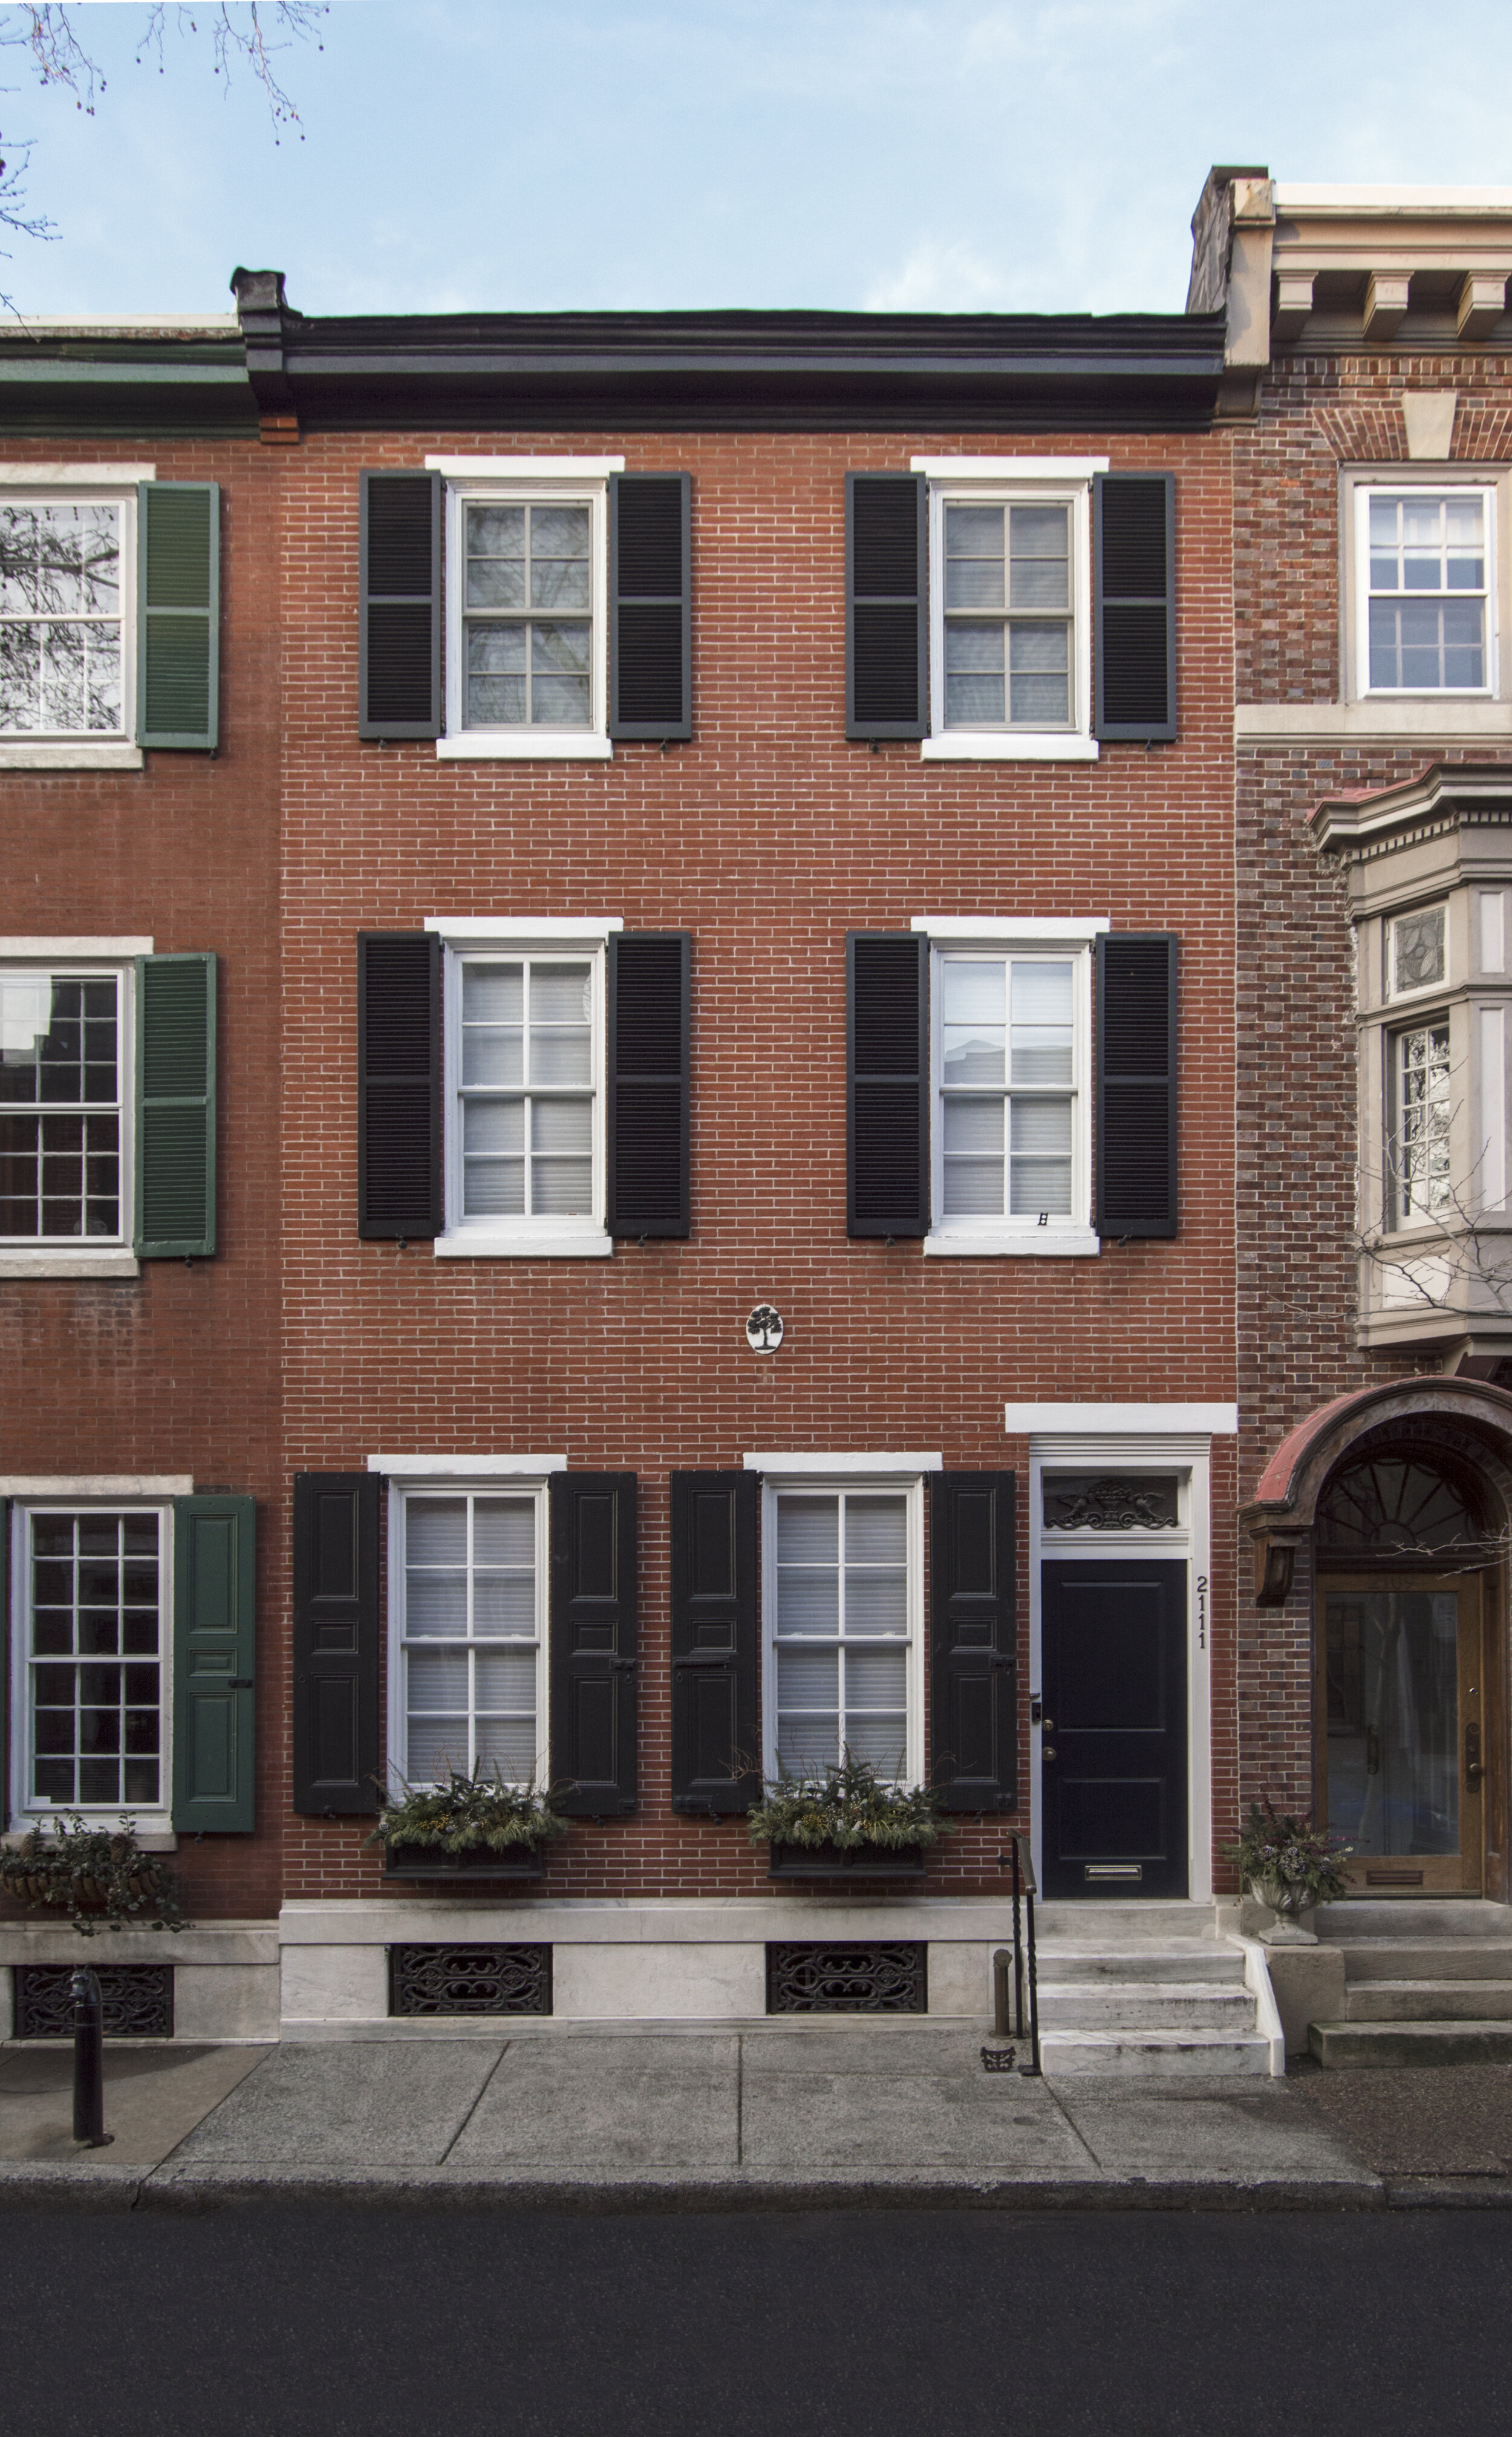 2_RittenhouseSquareTownhouse_exteriorafter_facade.jpg